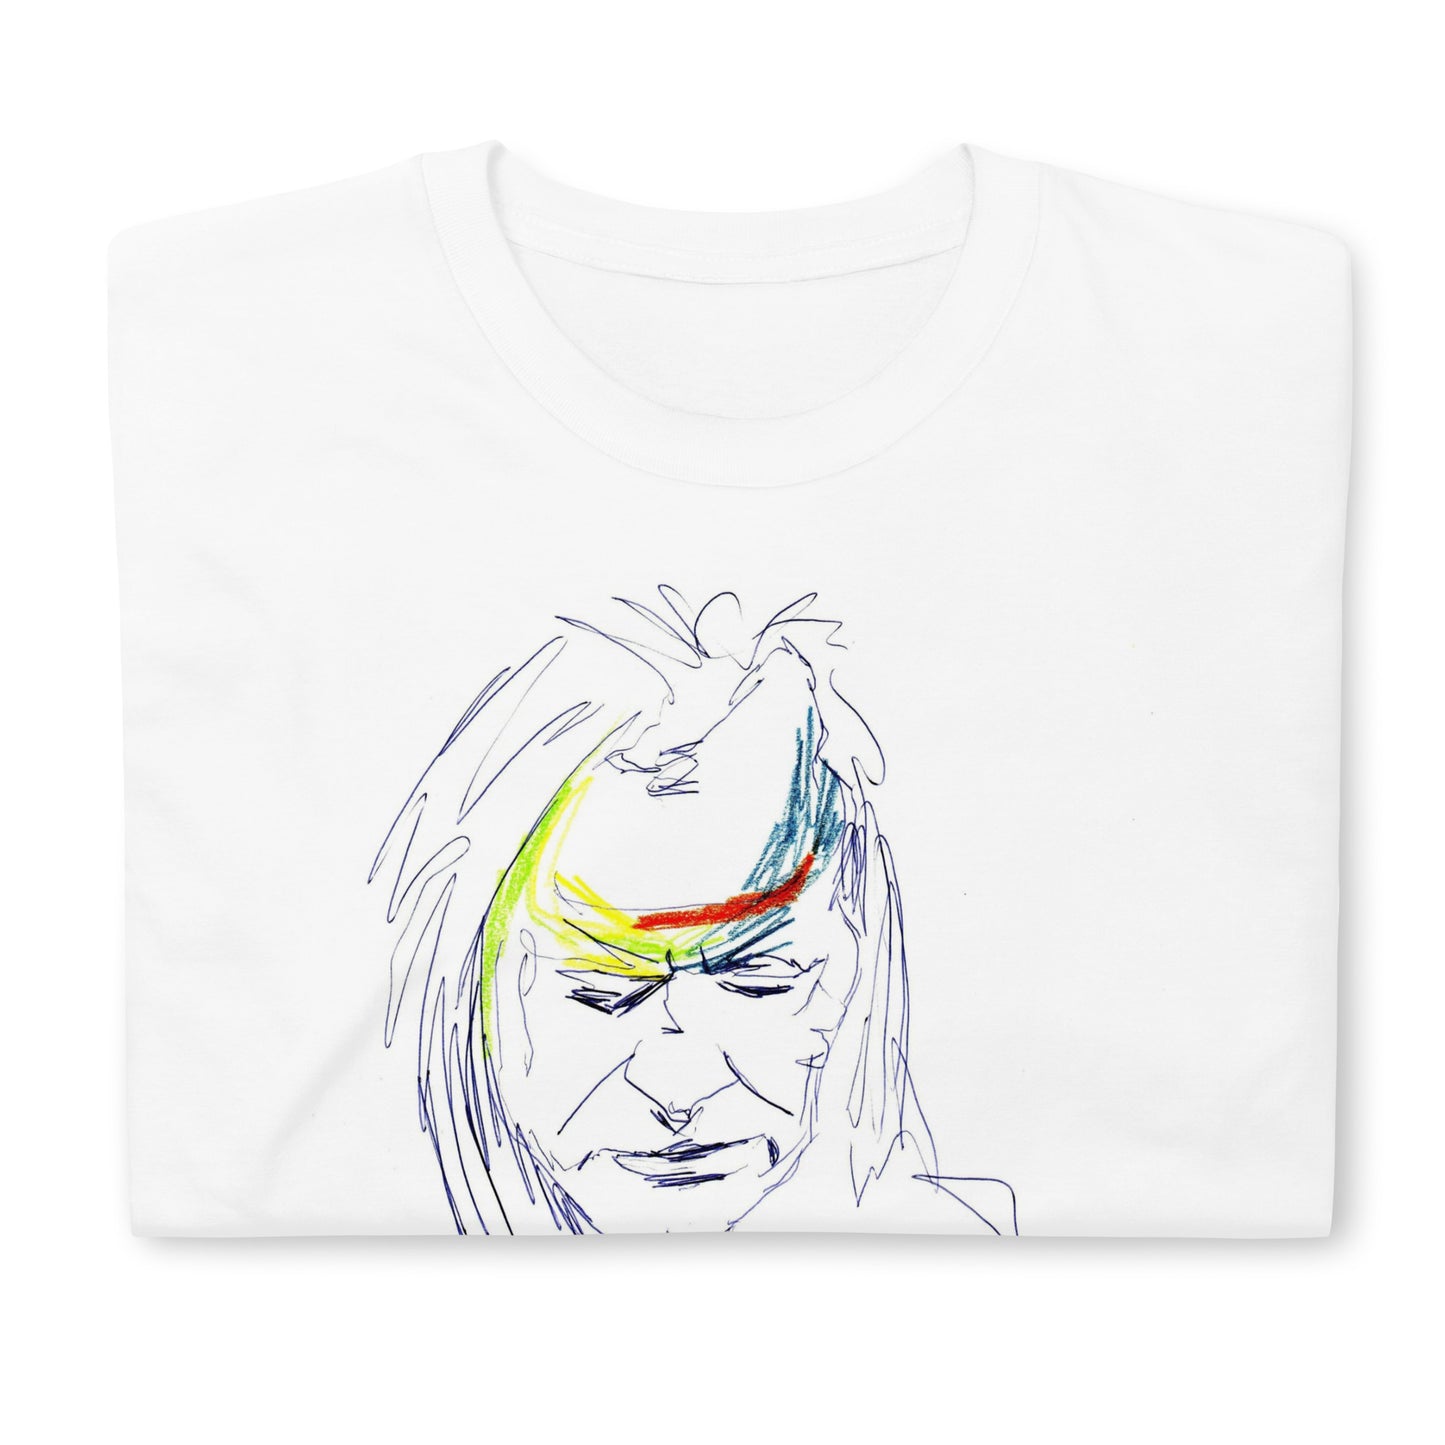 Unisex-T-Shirt Kimski Gedanken sammelnd